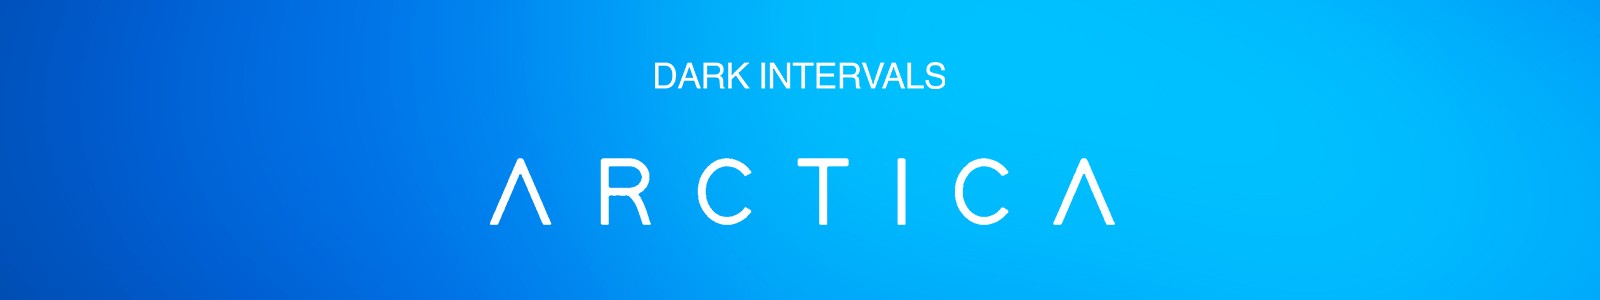 Dark Intervals ARCTICA